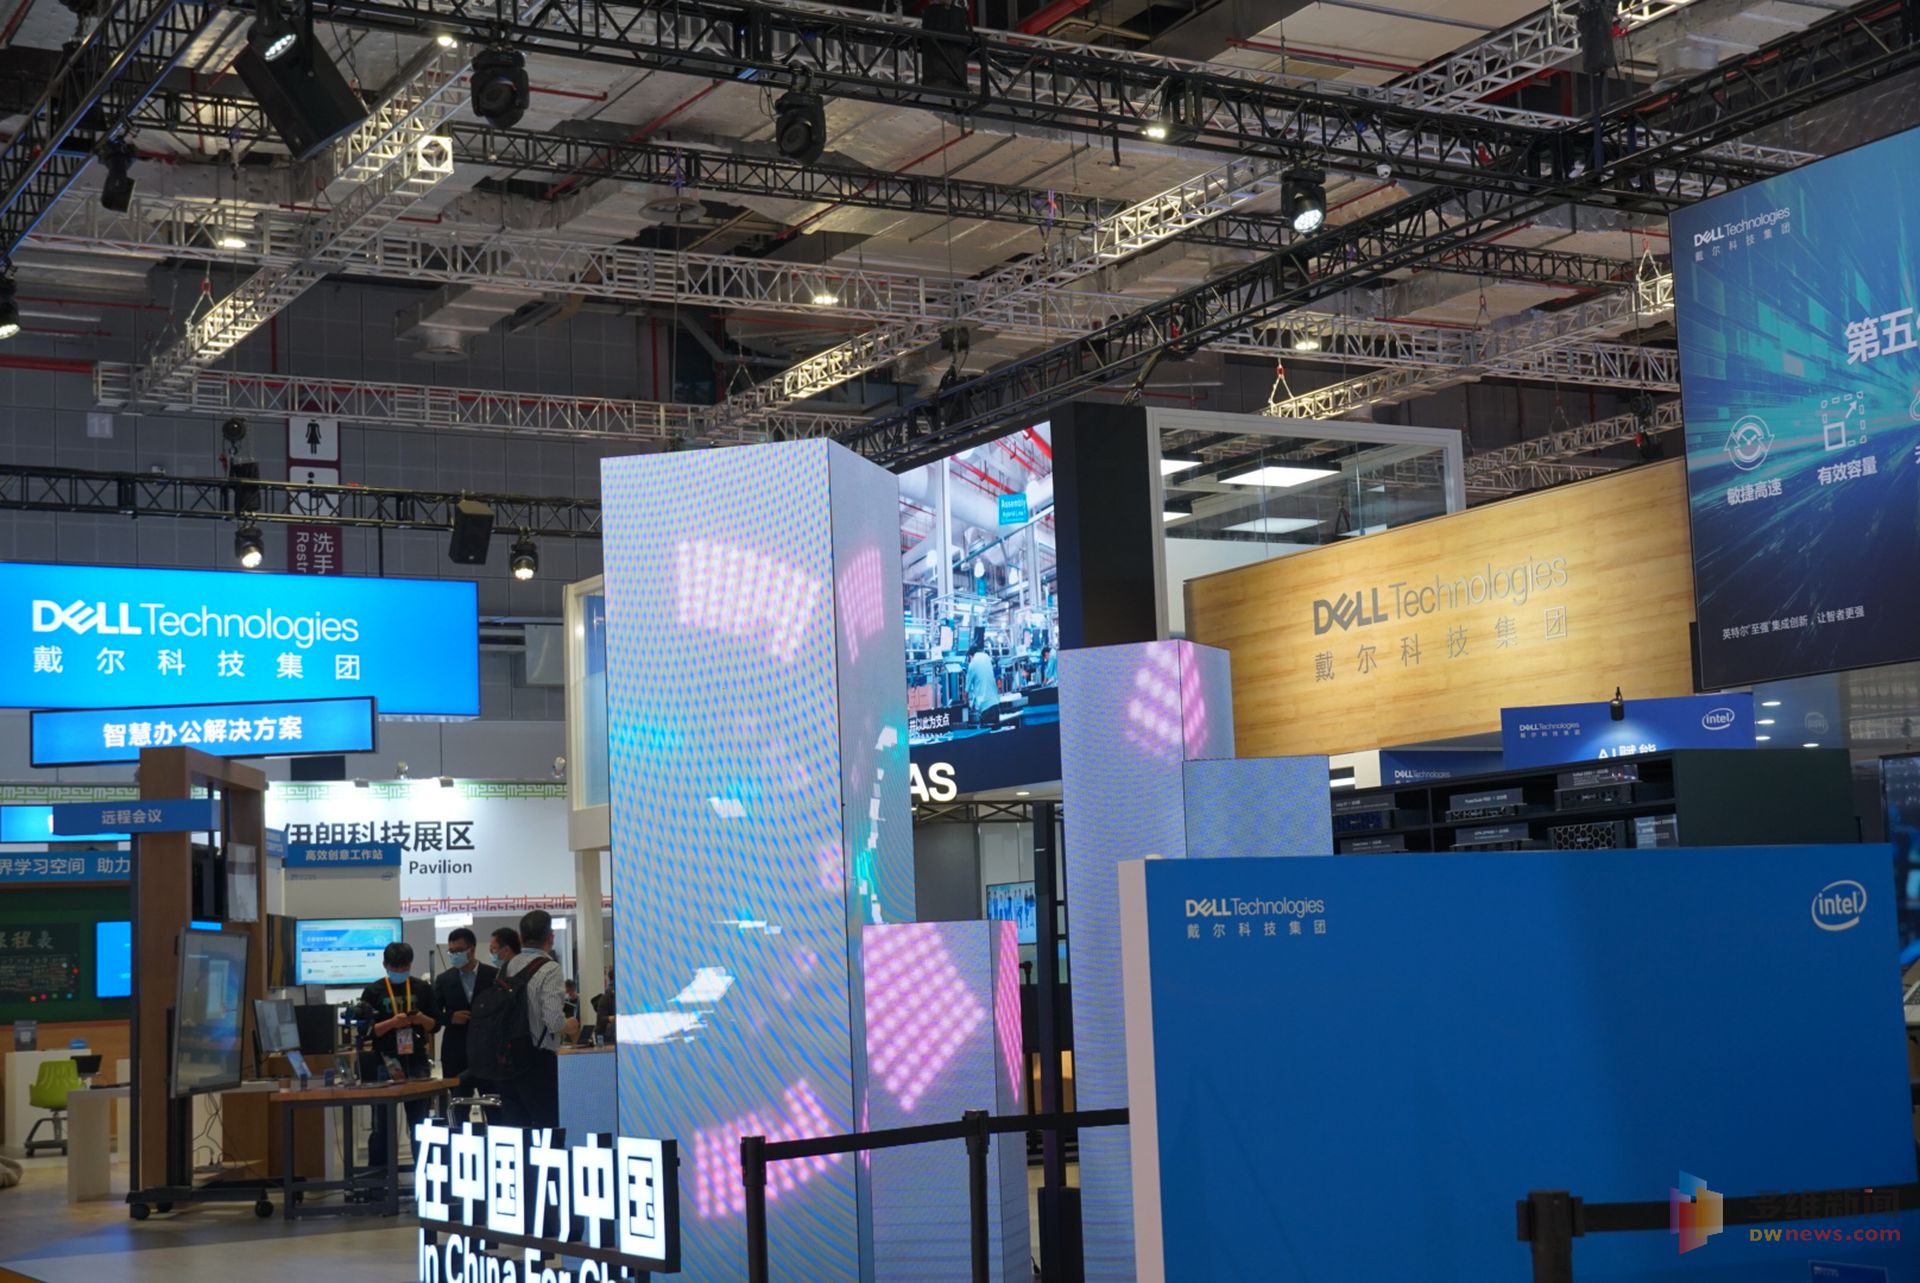 第三届进博会于11月5日至10日在国家会展中心（上海）举办。本届进博会商业企业展共设置了六大展区，展览面积超过上届规模。图为技术装备展区的戴尔展区，科技思路更进一步。